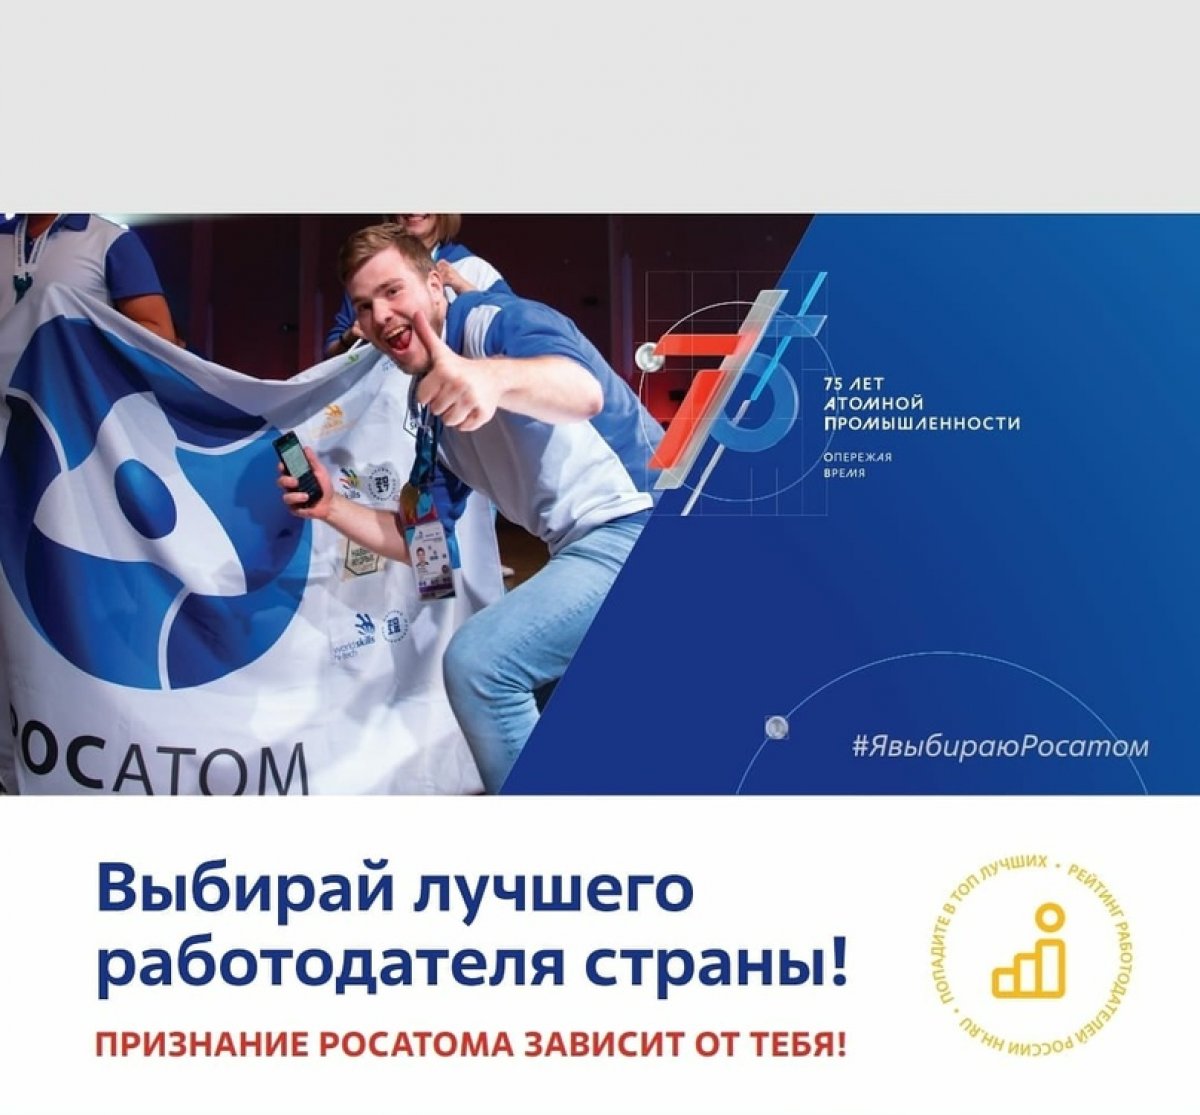 Приглашаем вас принять участие​ в определении лучшего работодателя России 2020 года,​ по версии кадровой платформы HeadHunter.​